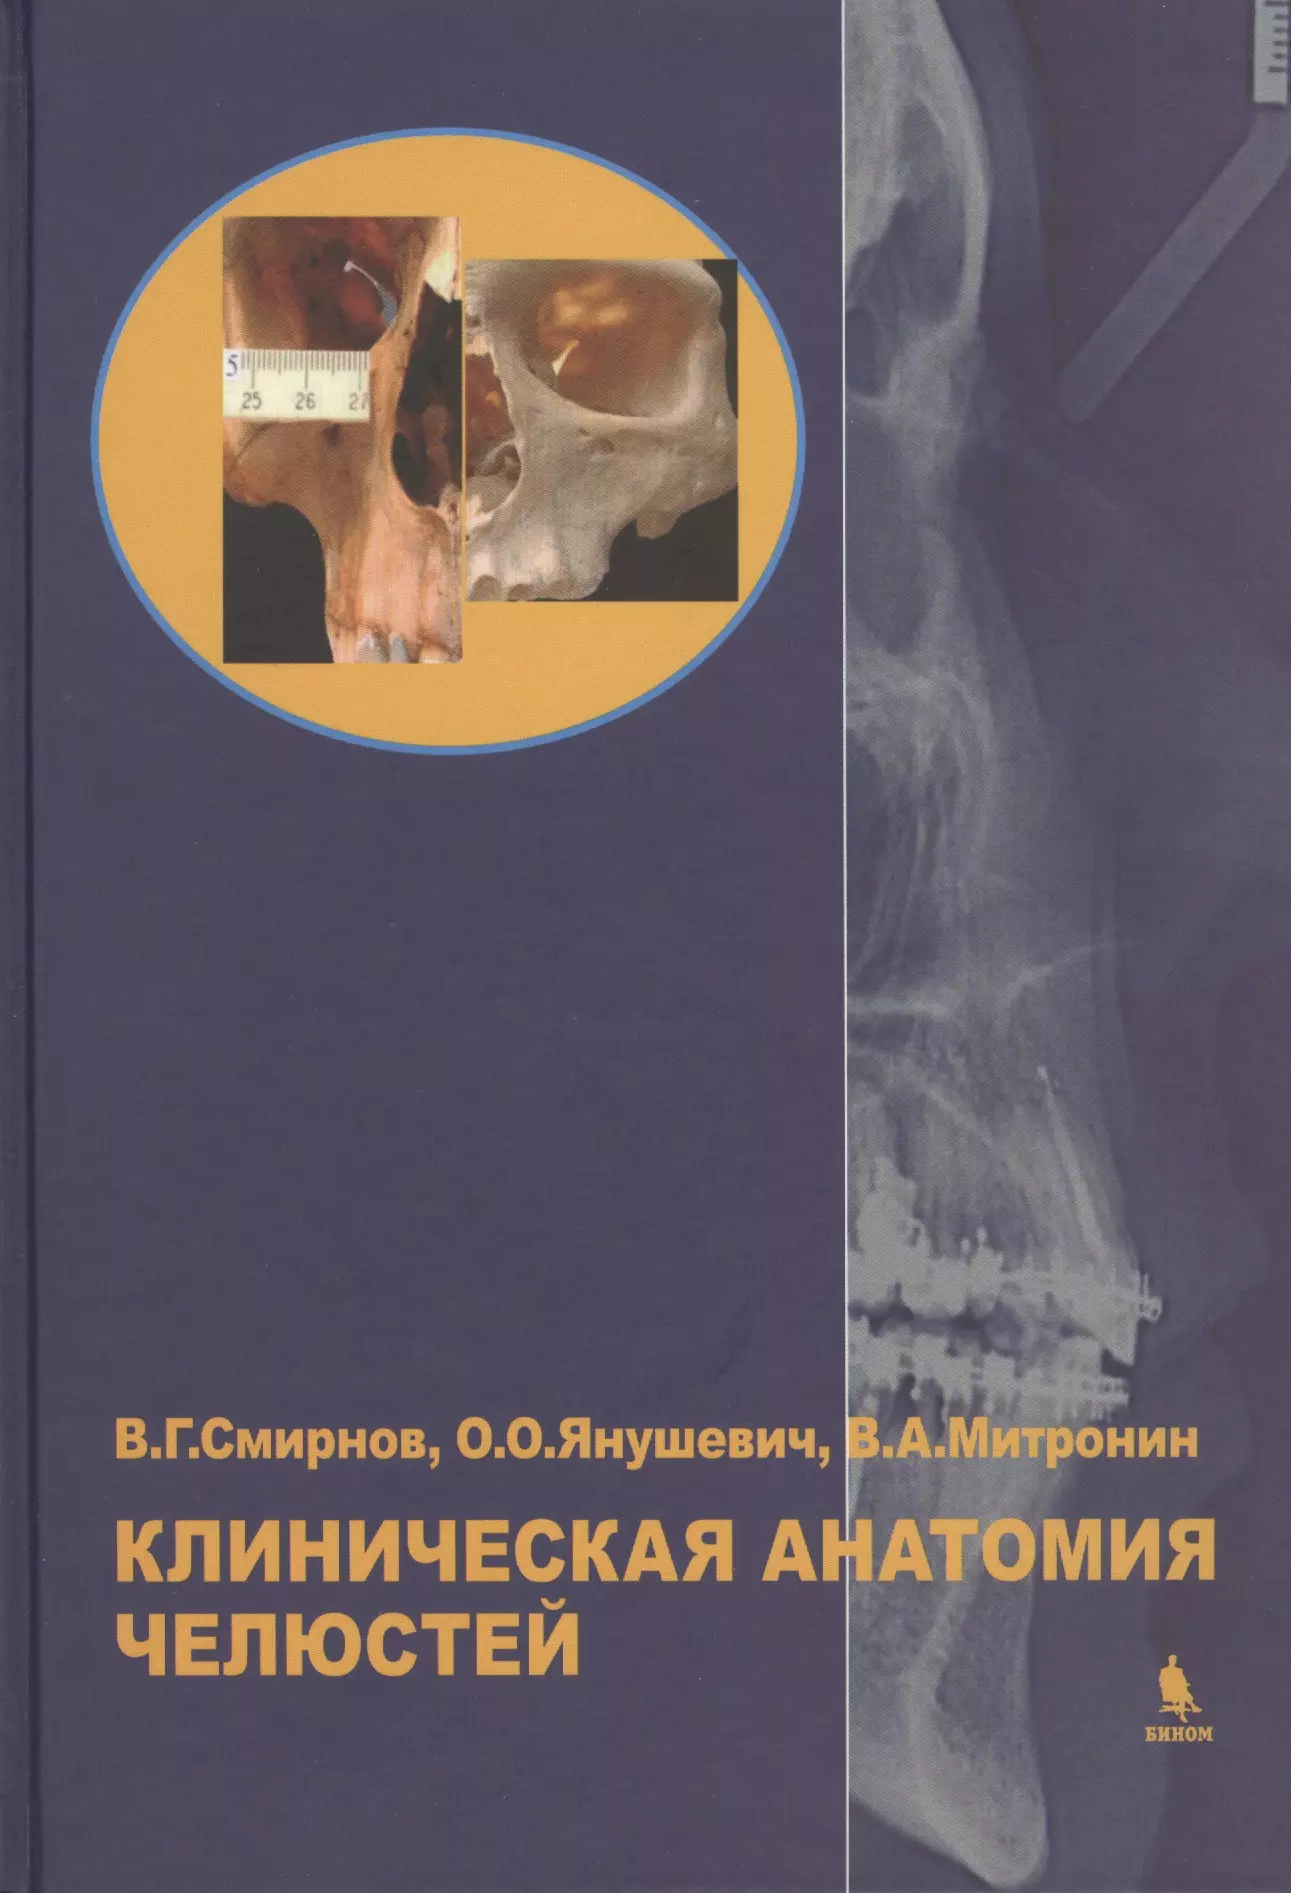 Смирнов Виталий Григорьевич - Клиническая анатомия челюстей